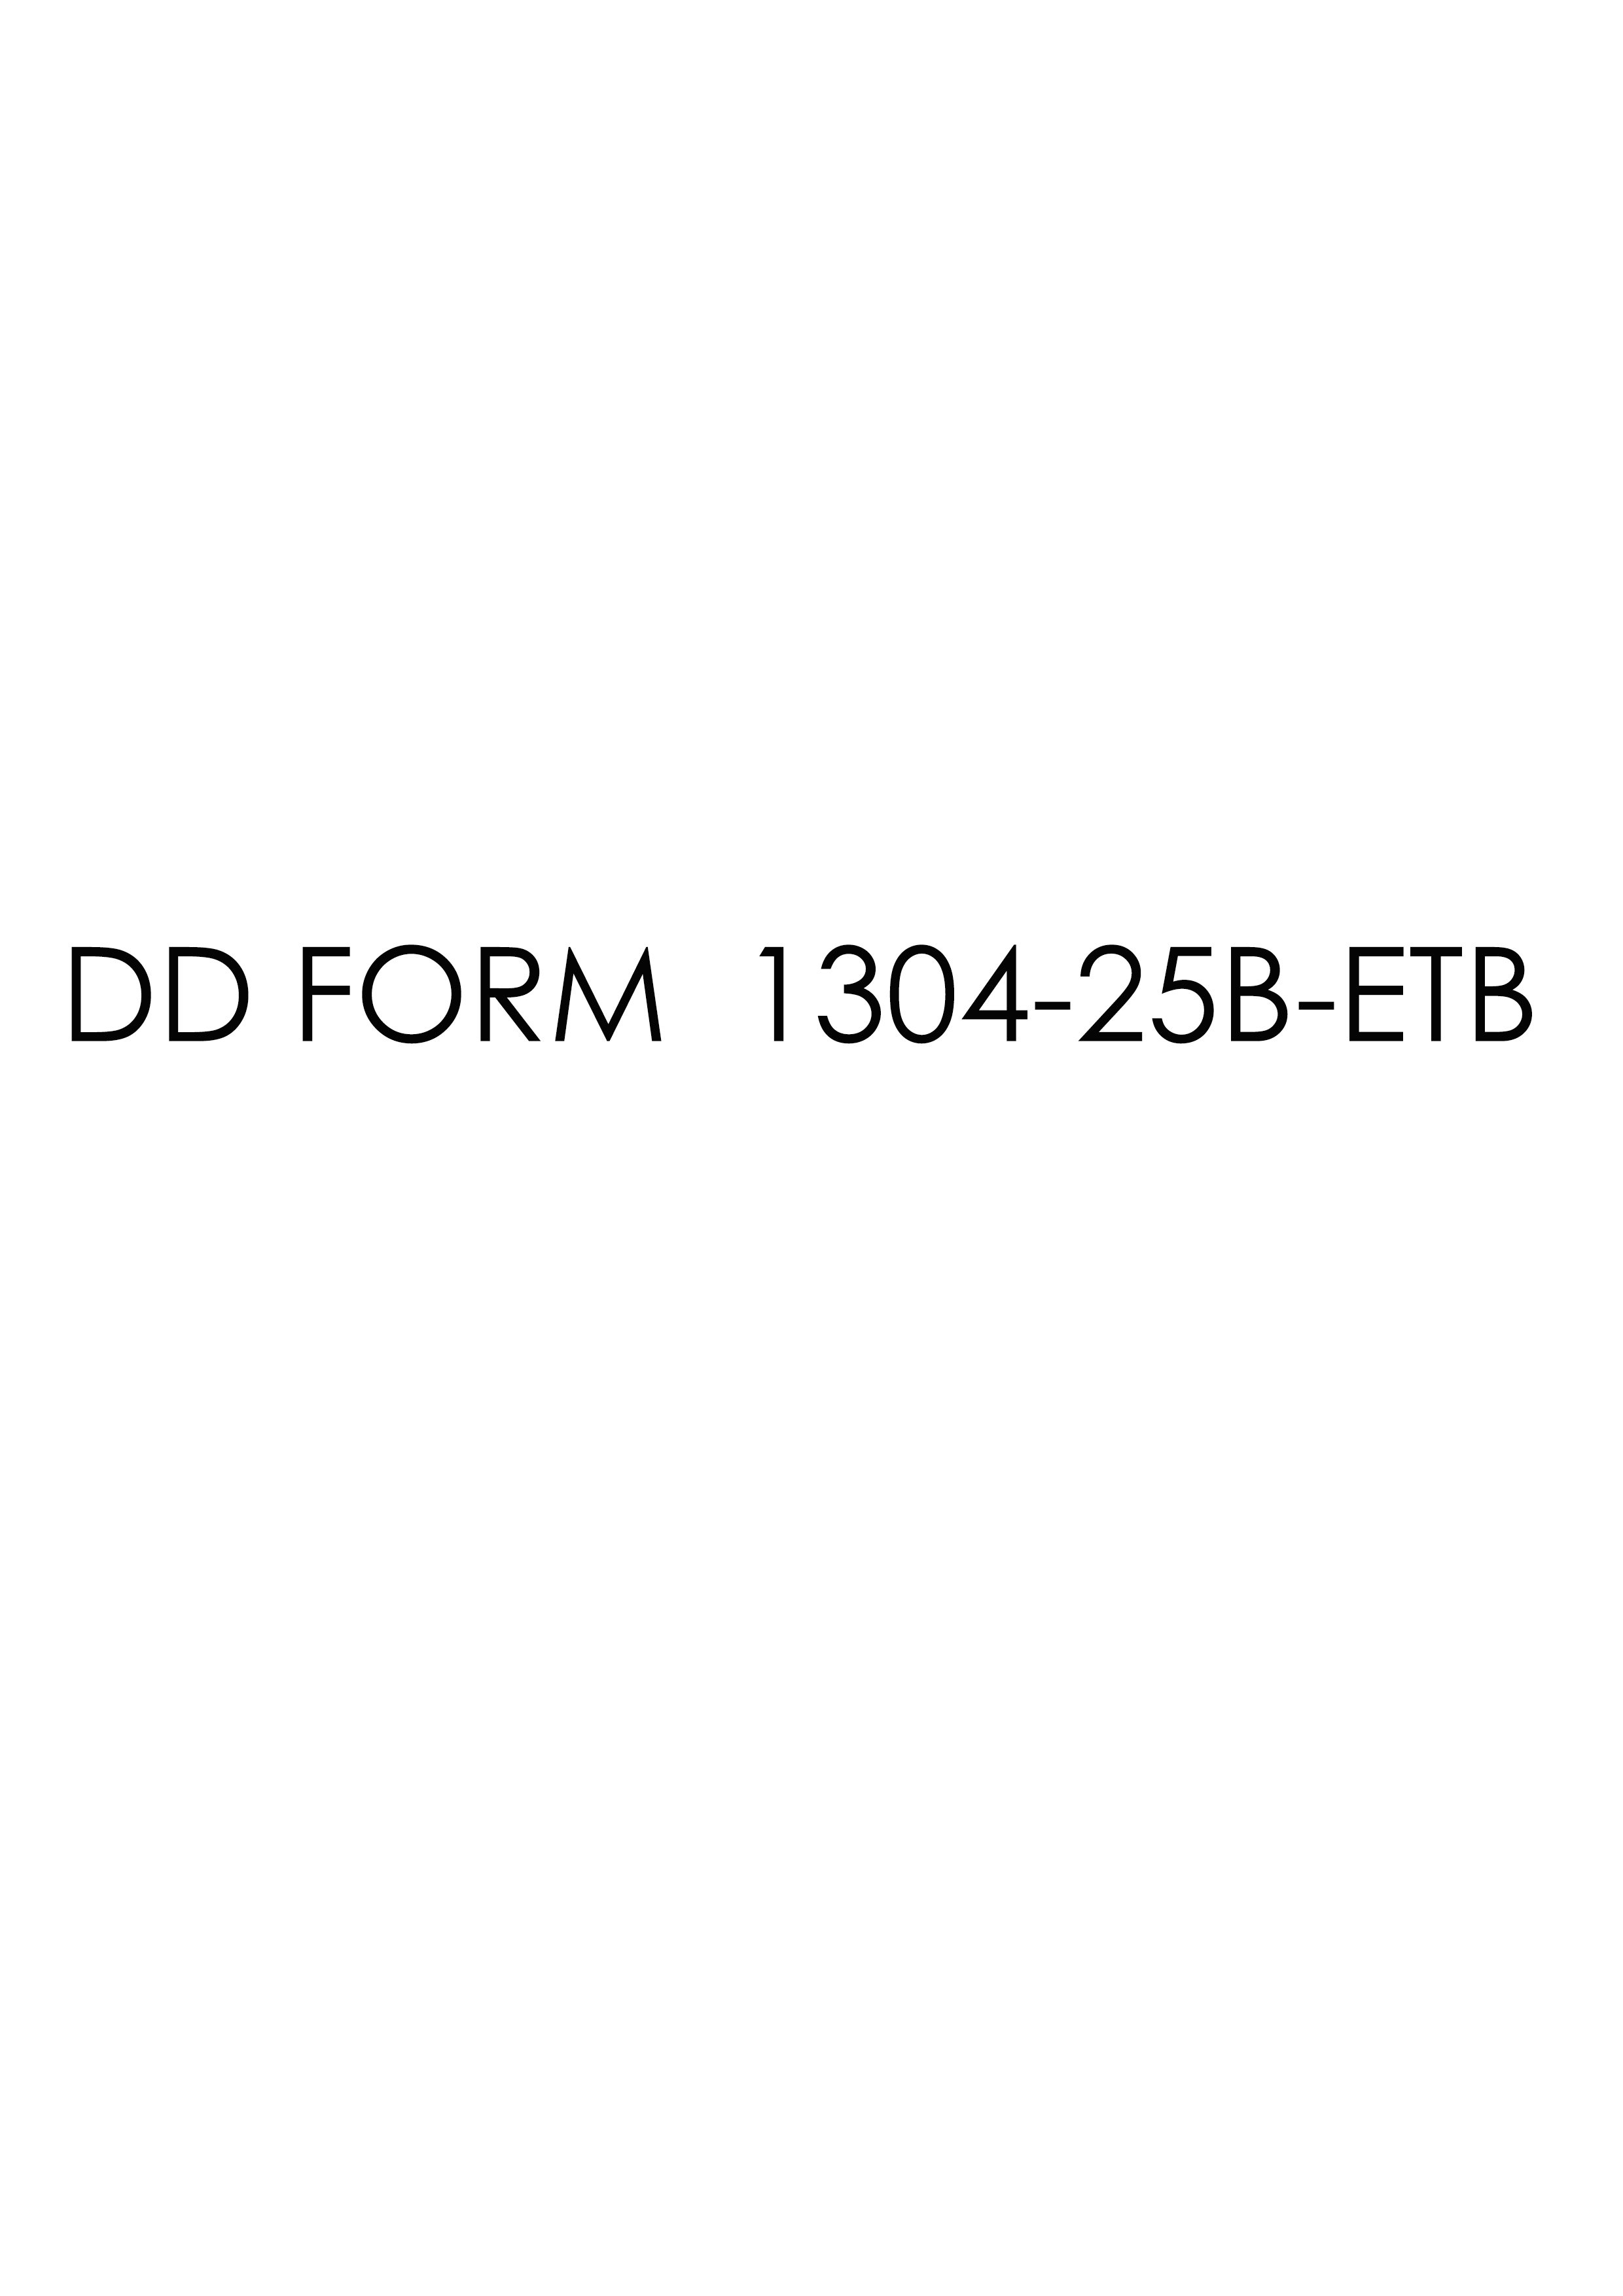 Download dd Form 1304-25B-ETB